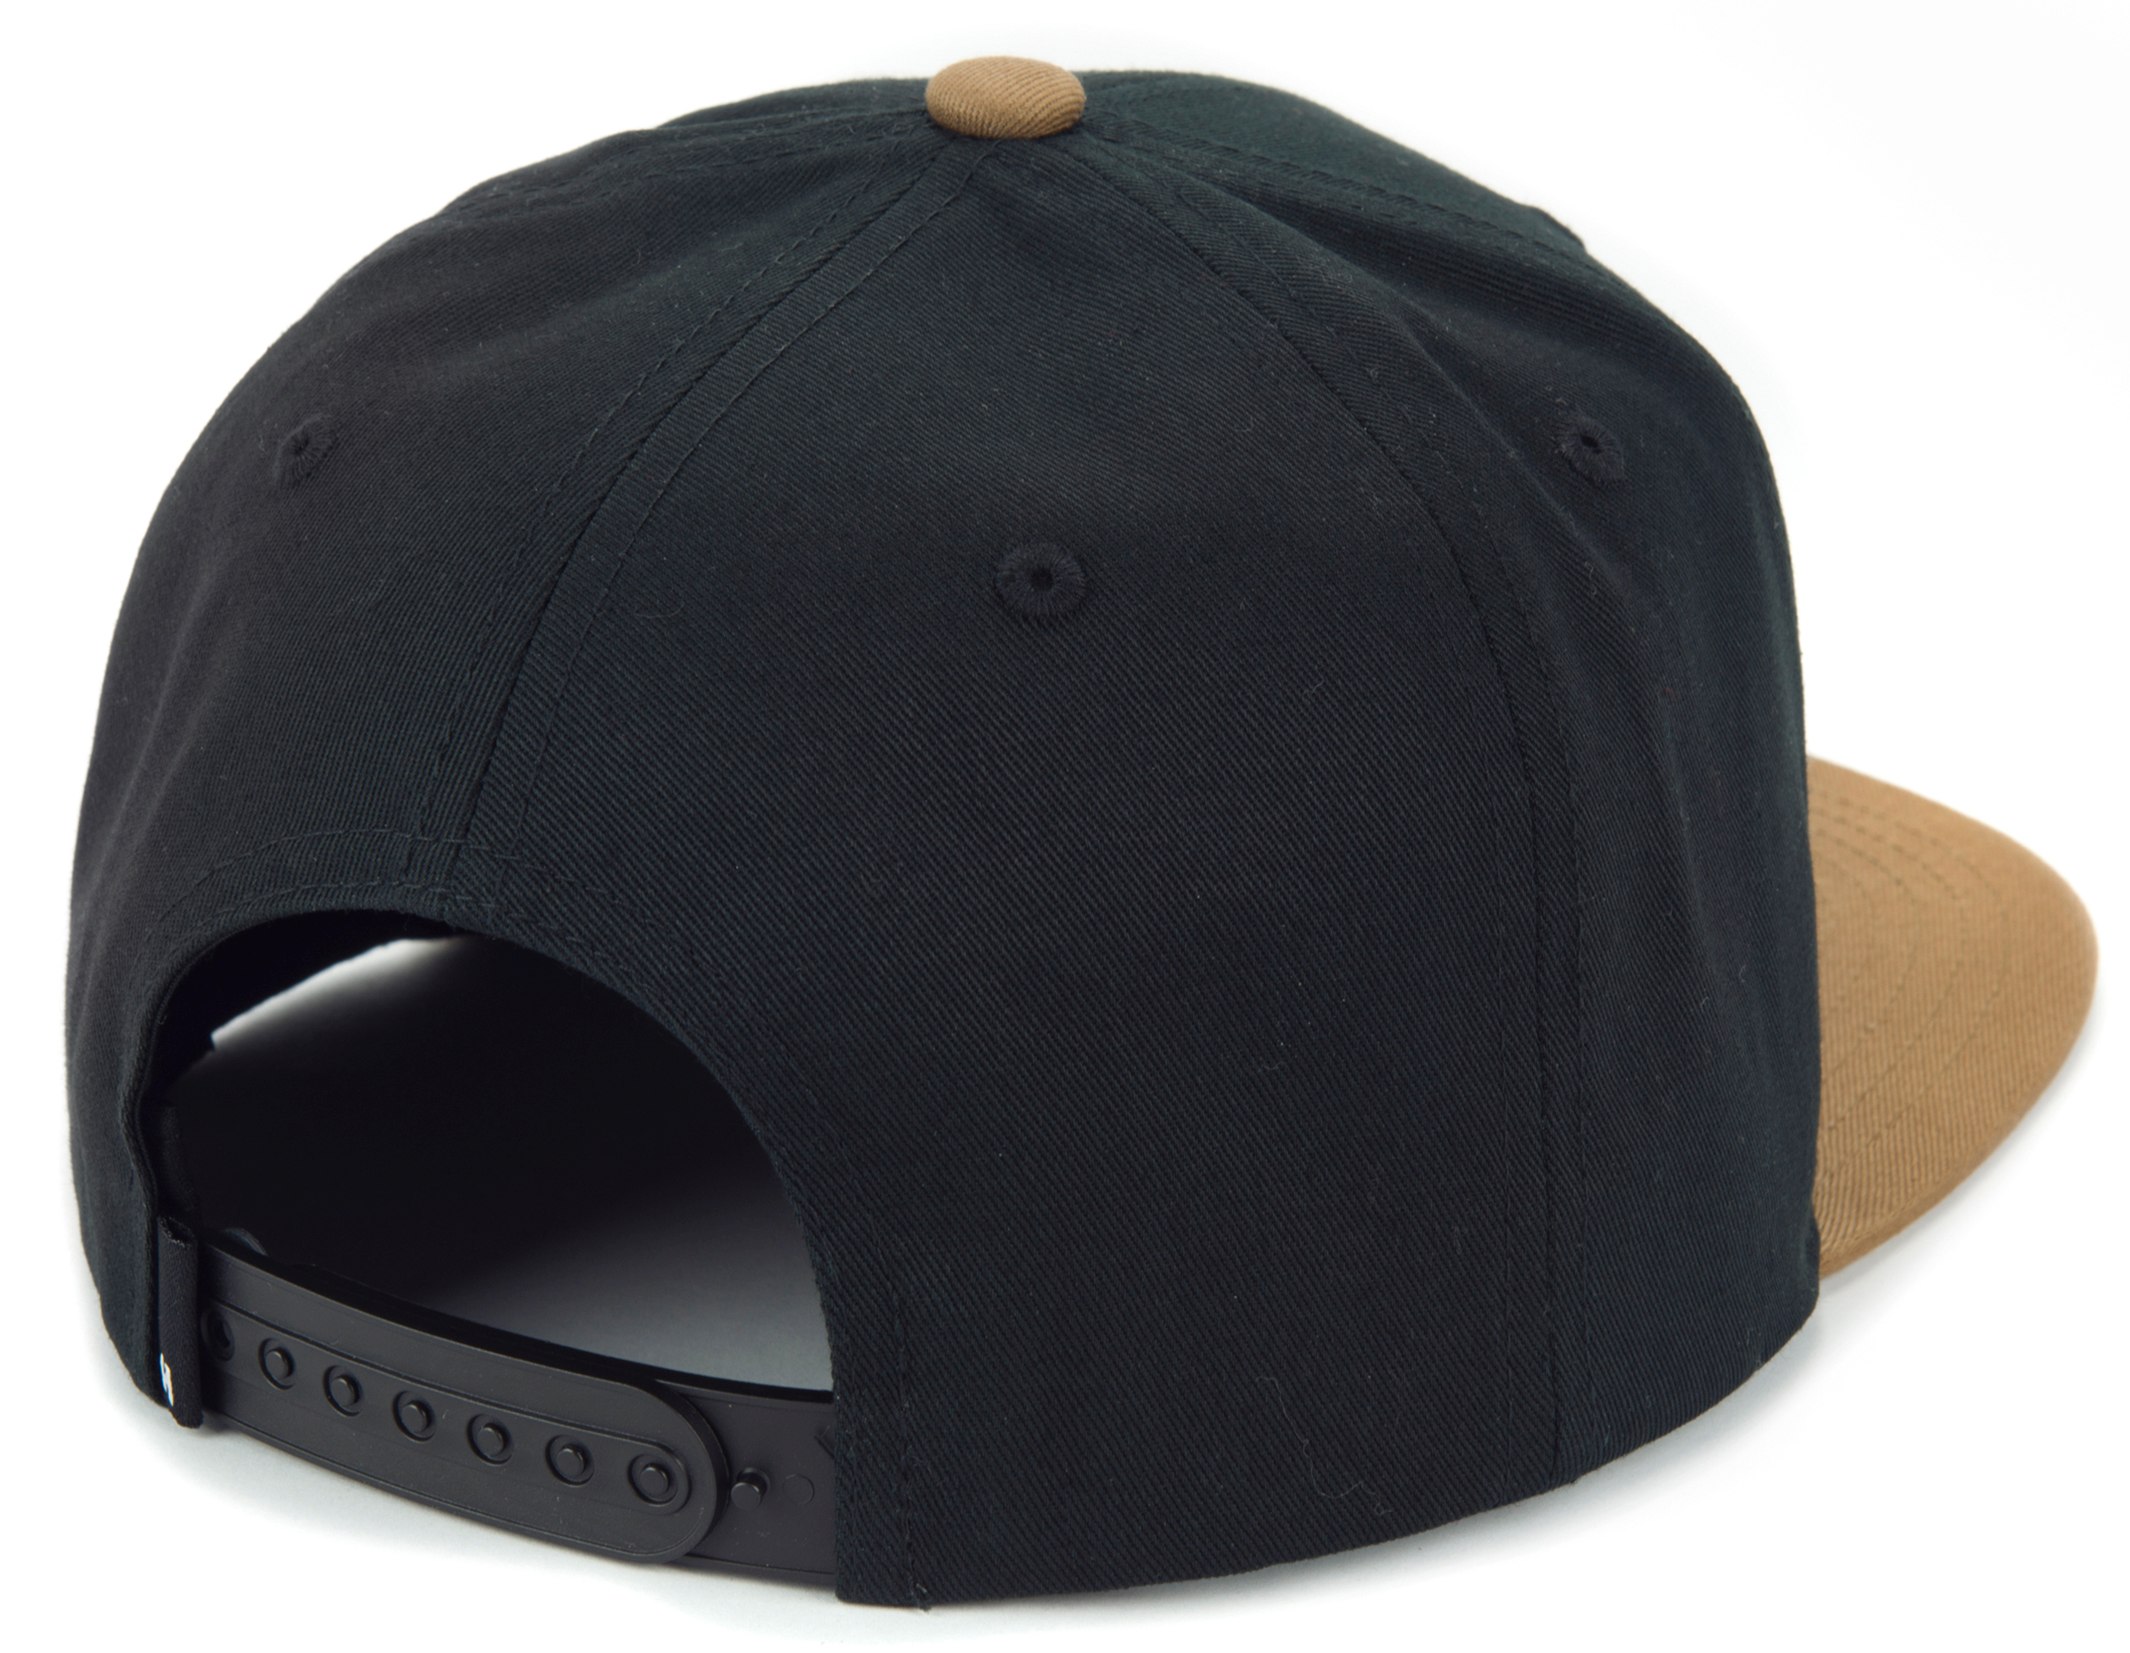 Snapback baseball cap